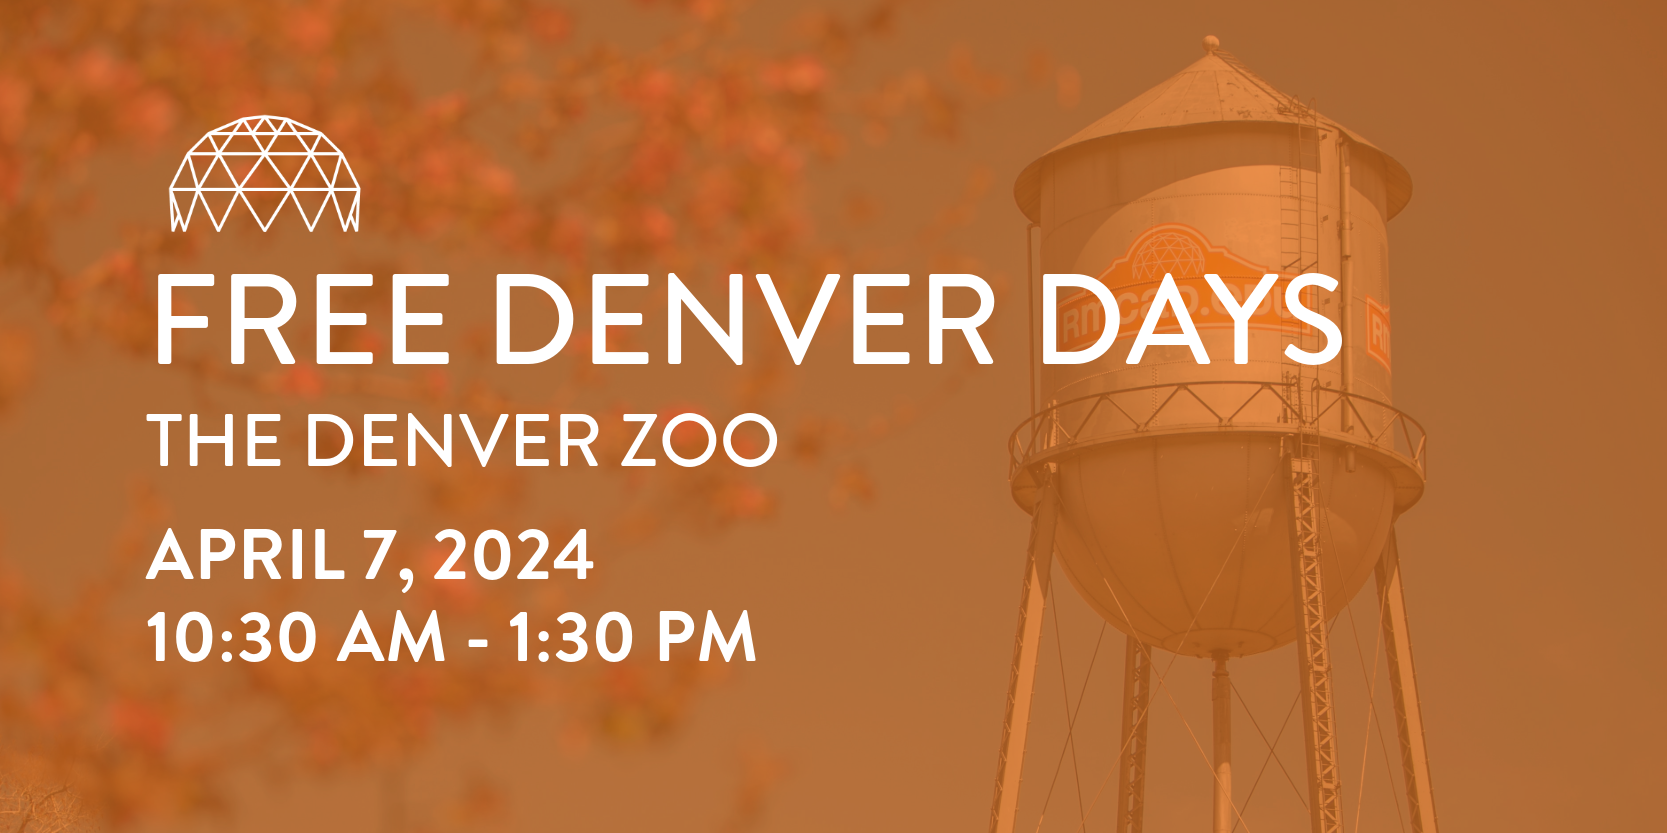 Free Denver Days - The Denver Zoo